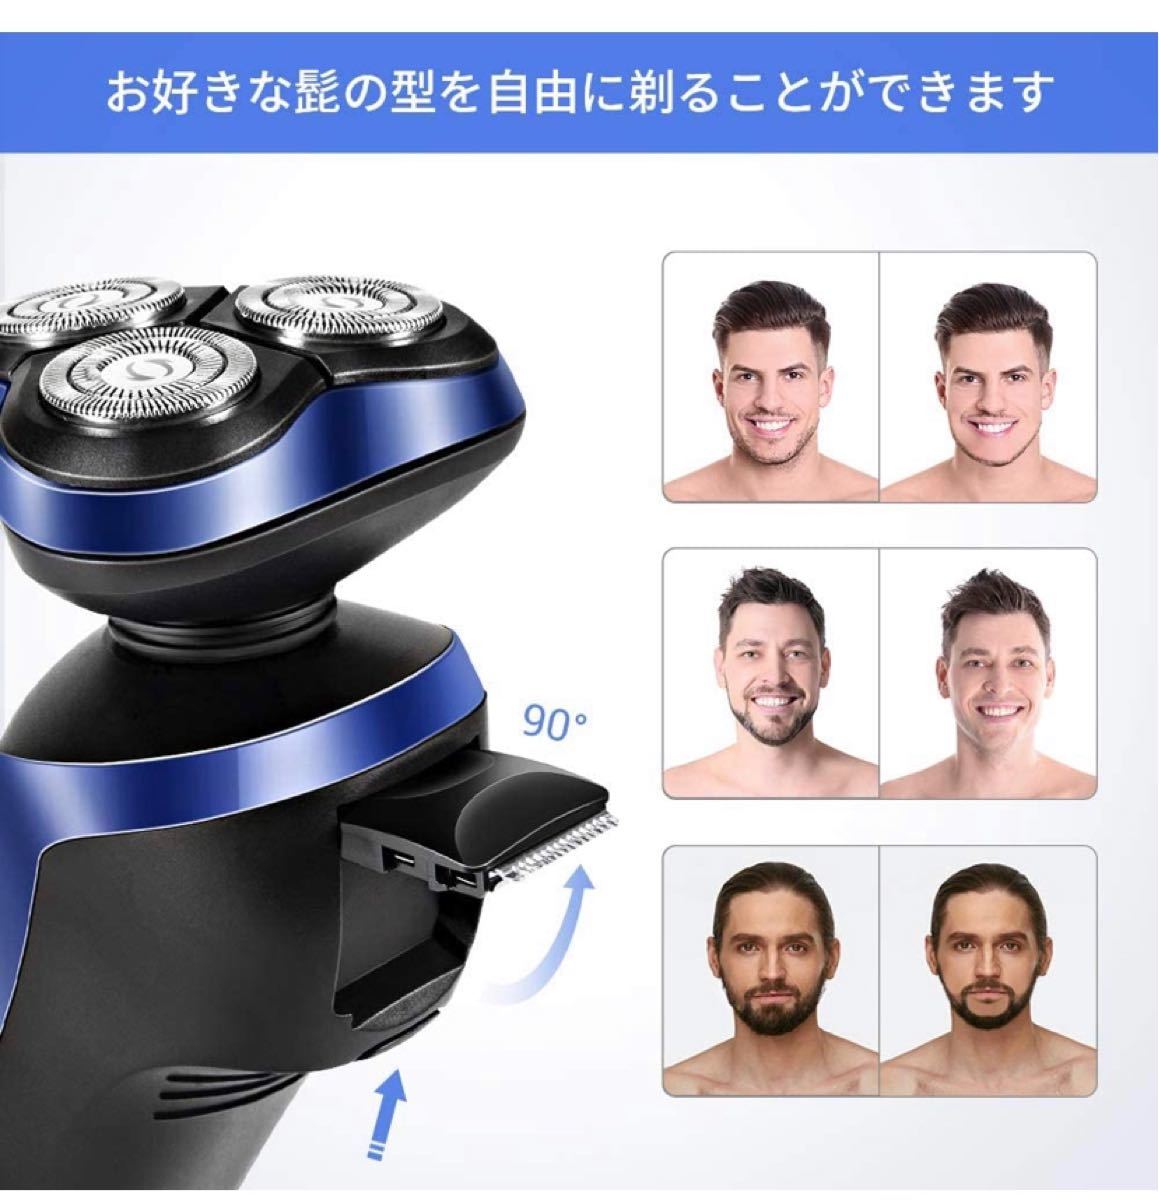 メンズ電気シェーバー ひげそり 回転式 IPX7防水USB充電式日本語説明書付き